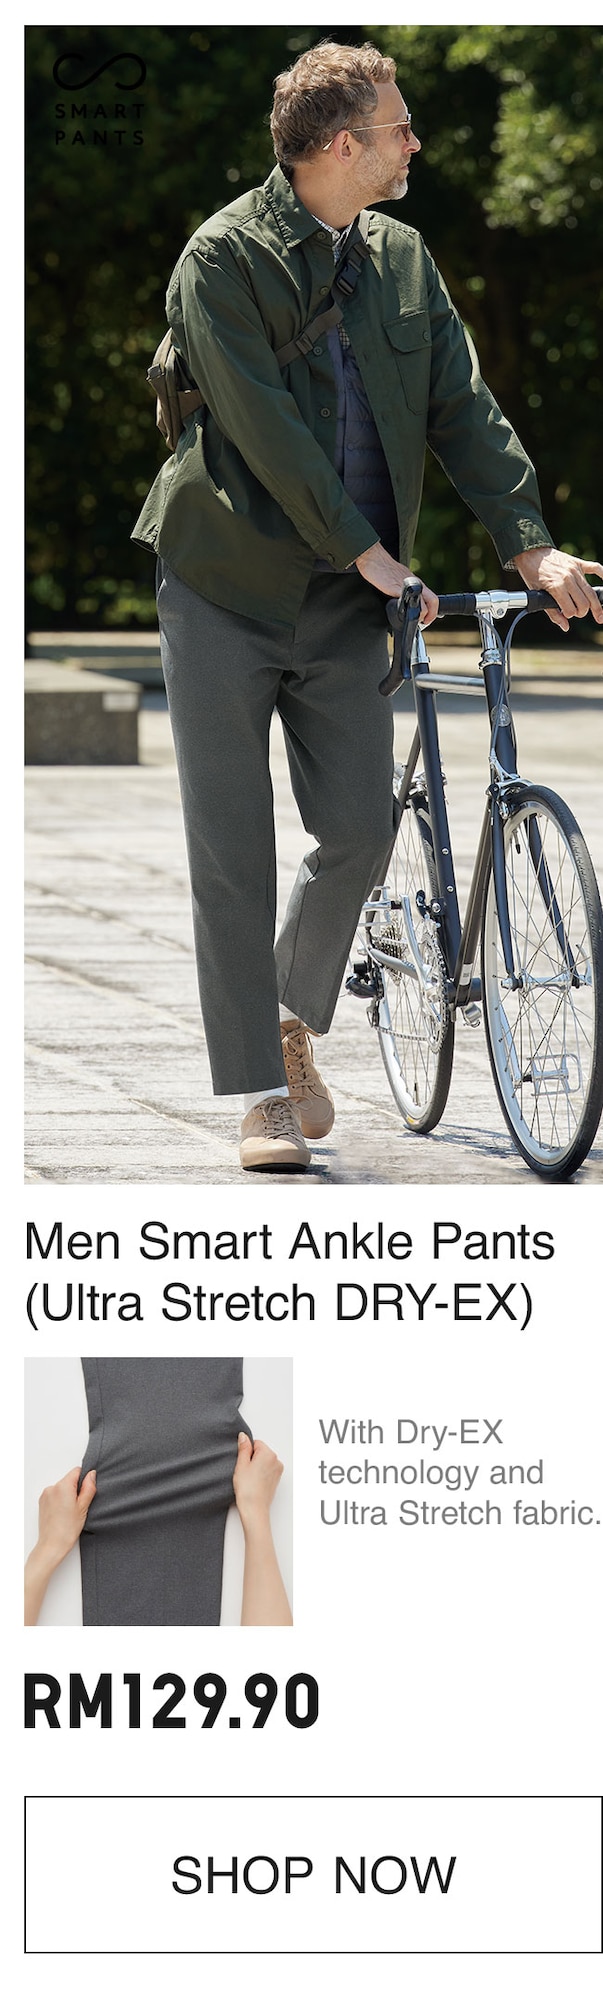 MEN SMART ANKLE PANTS